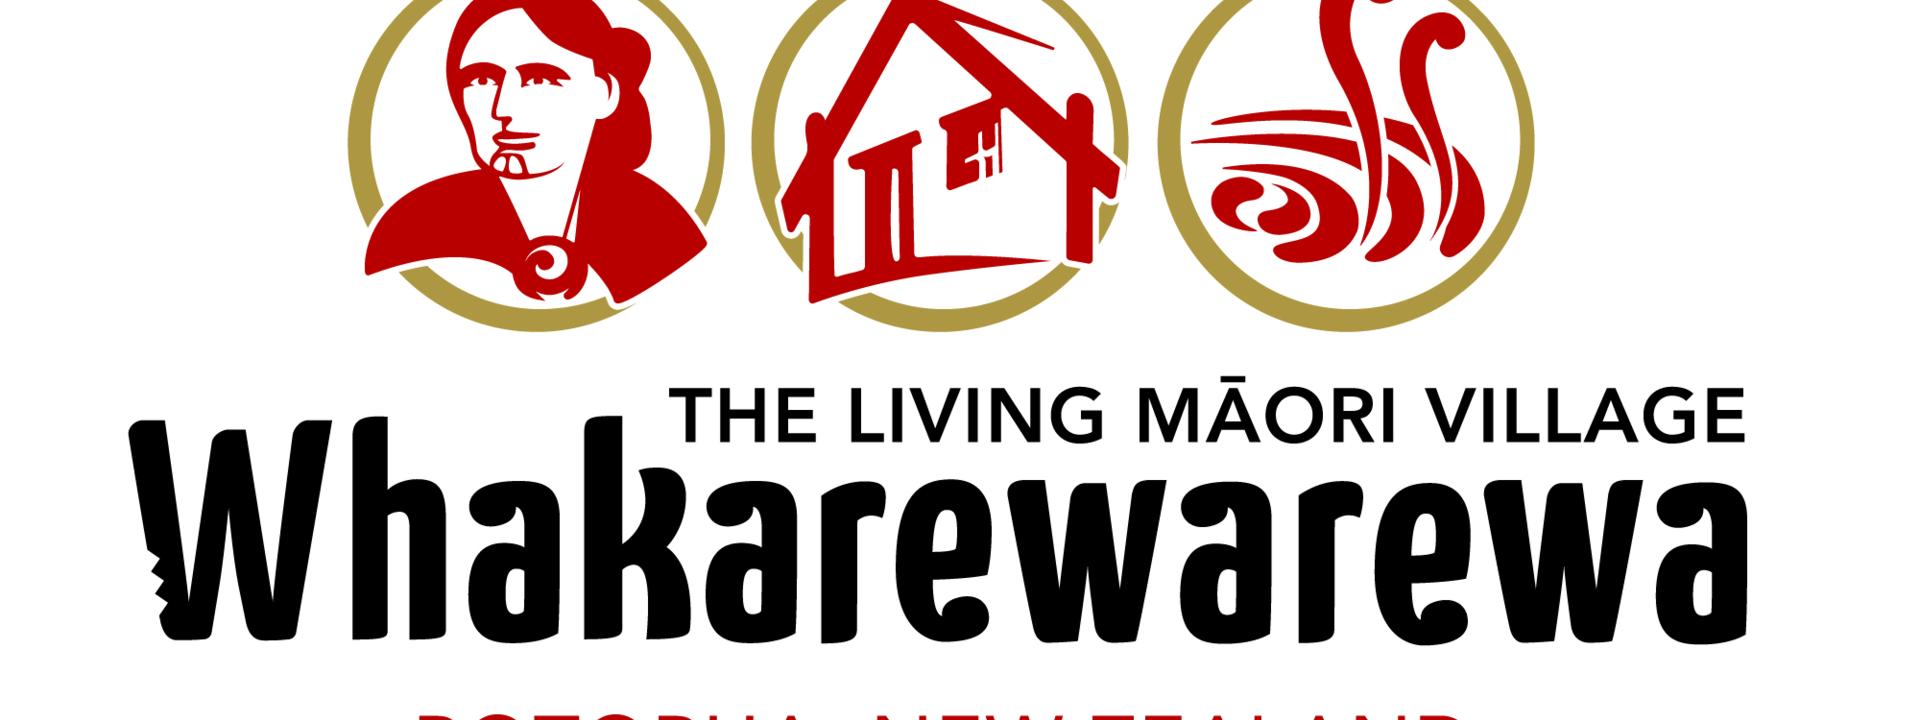 Whakarewarewa logo main Artboard 1 copy 2extra large.jpg